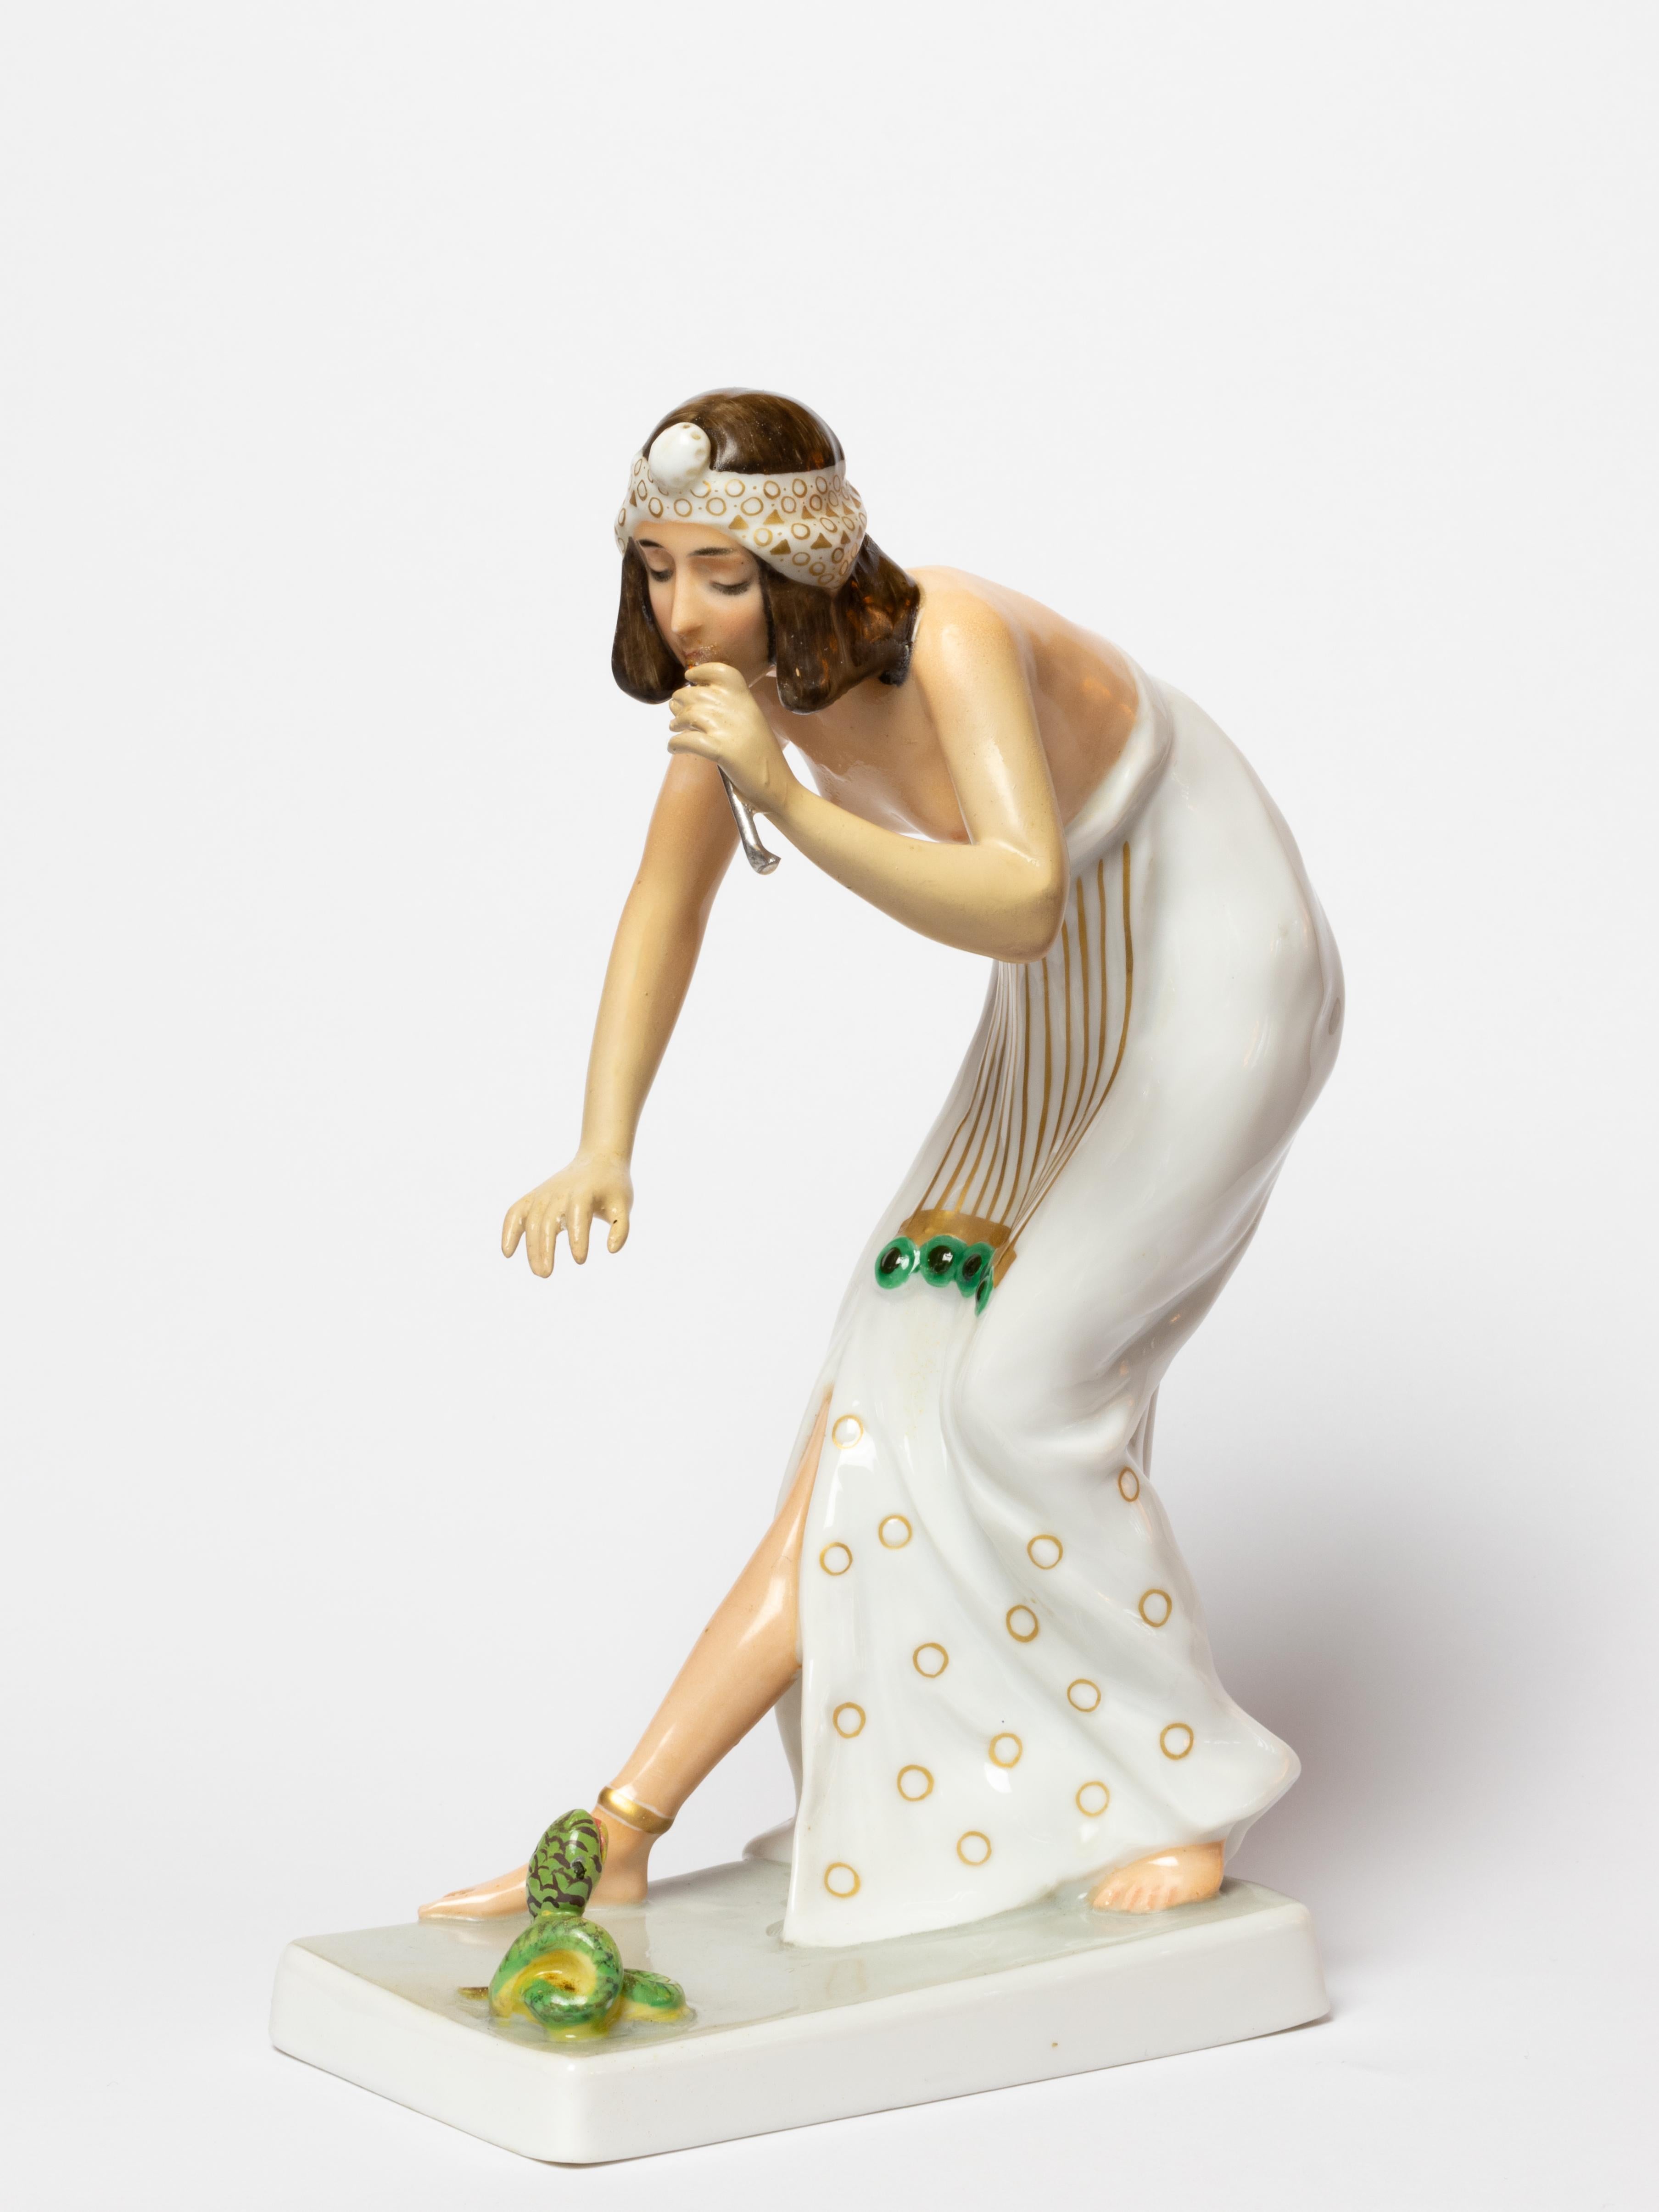 Figurine en porcelaine de Rosenthal représentant un charmeur de serpents, d'après un modèle de Berthold Boesz, modèle n° K442. 
Bibelot en forme de femme de style égyptien, enchantant un petit serpent sur une base rectangulaire.
